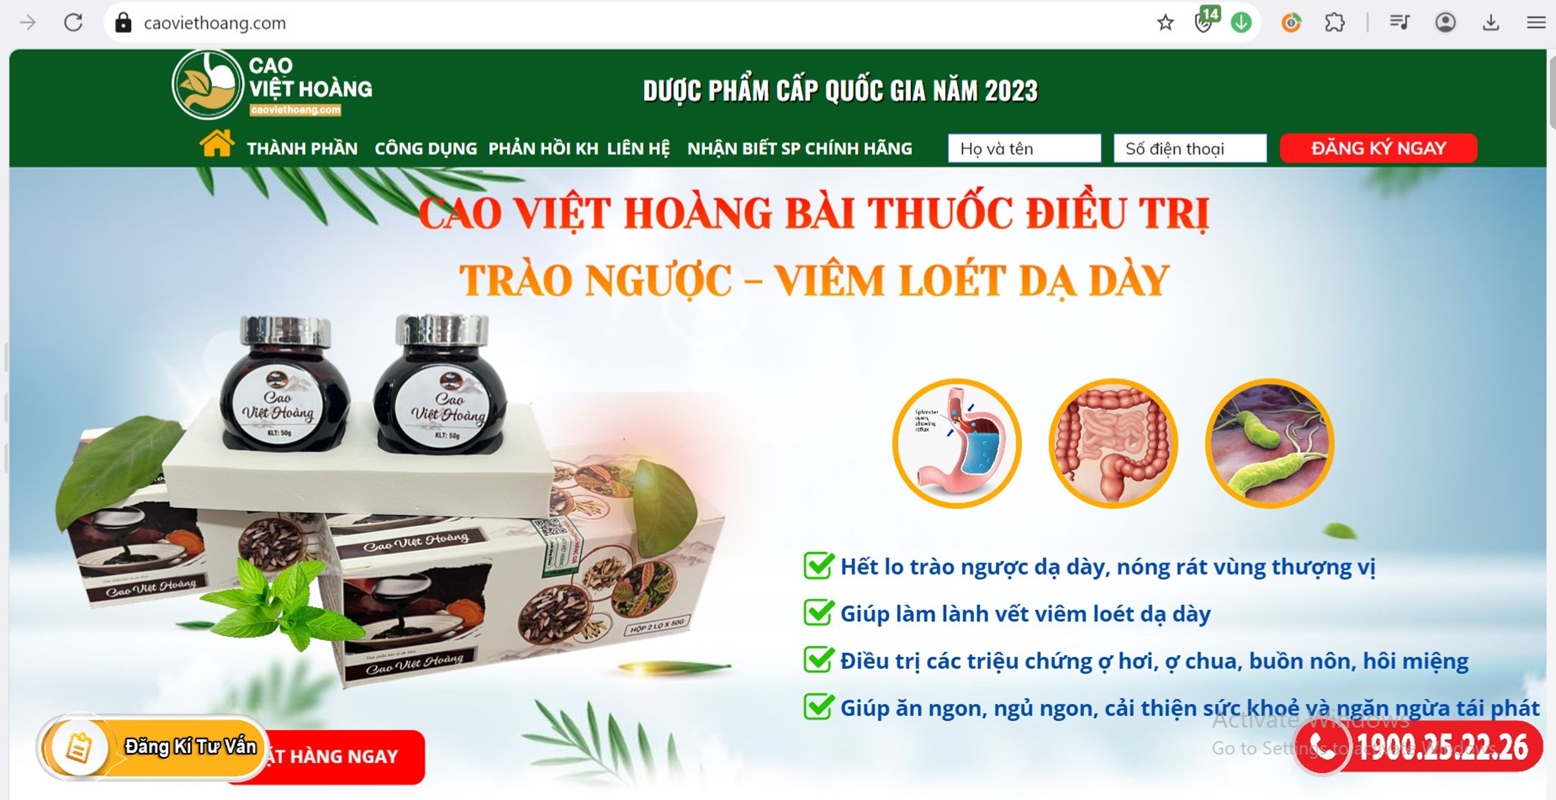 Dạ dày Cao Việt Hoàng quảng cáo sai công dụng, người dùng chớ nhẹ dạ cả tin